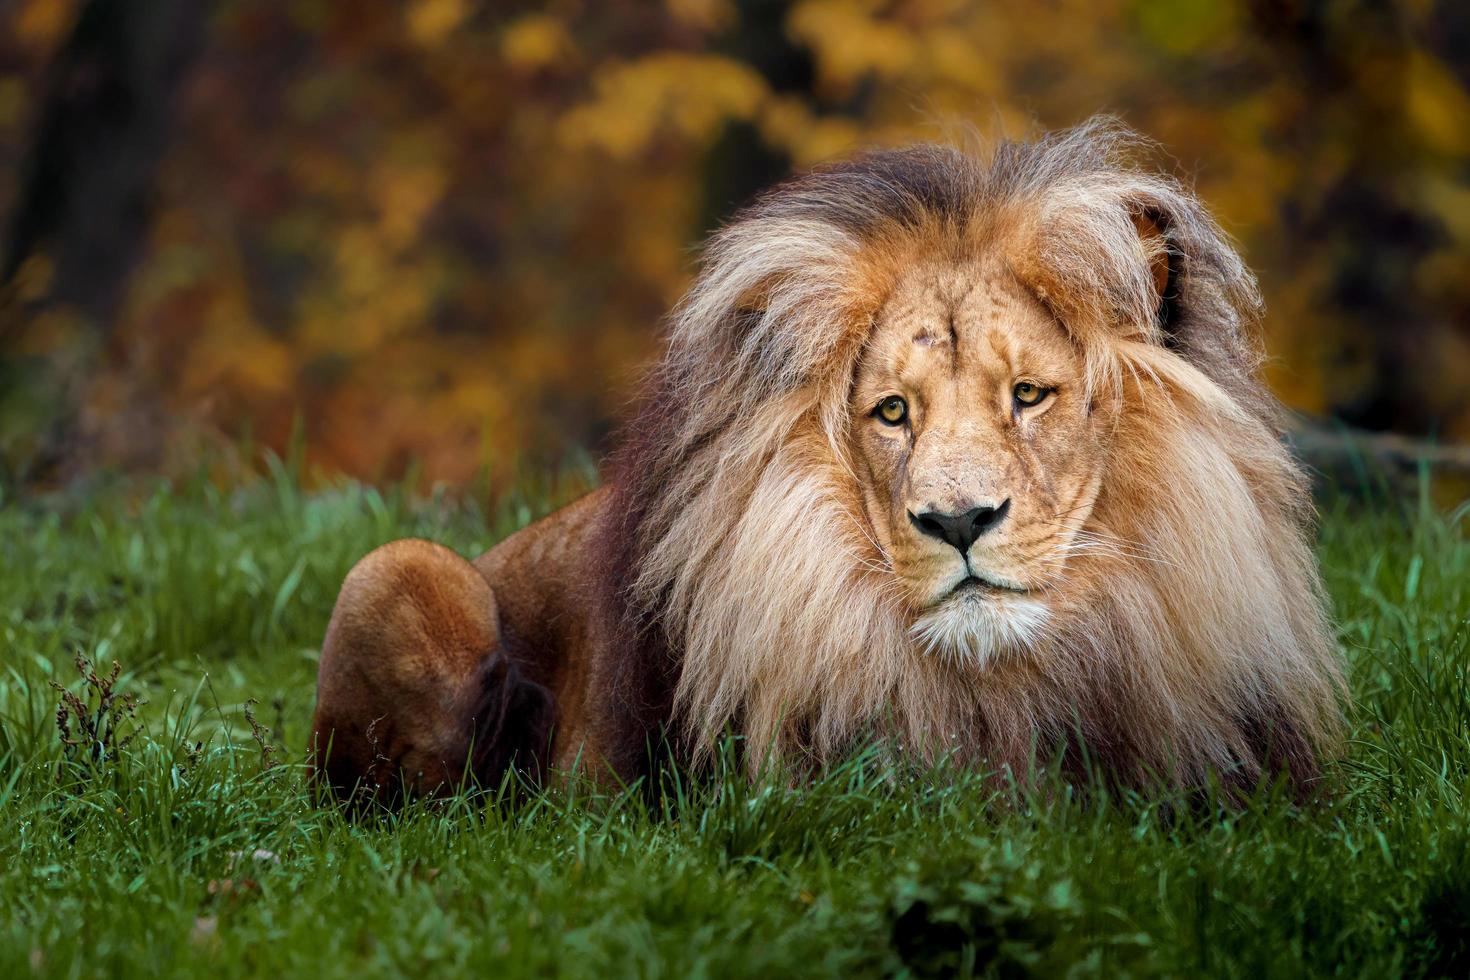 Porträt des Löwen foto